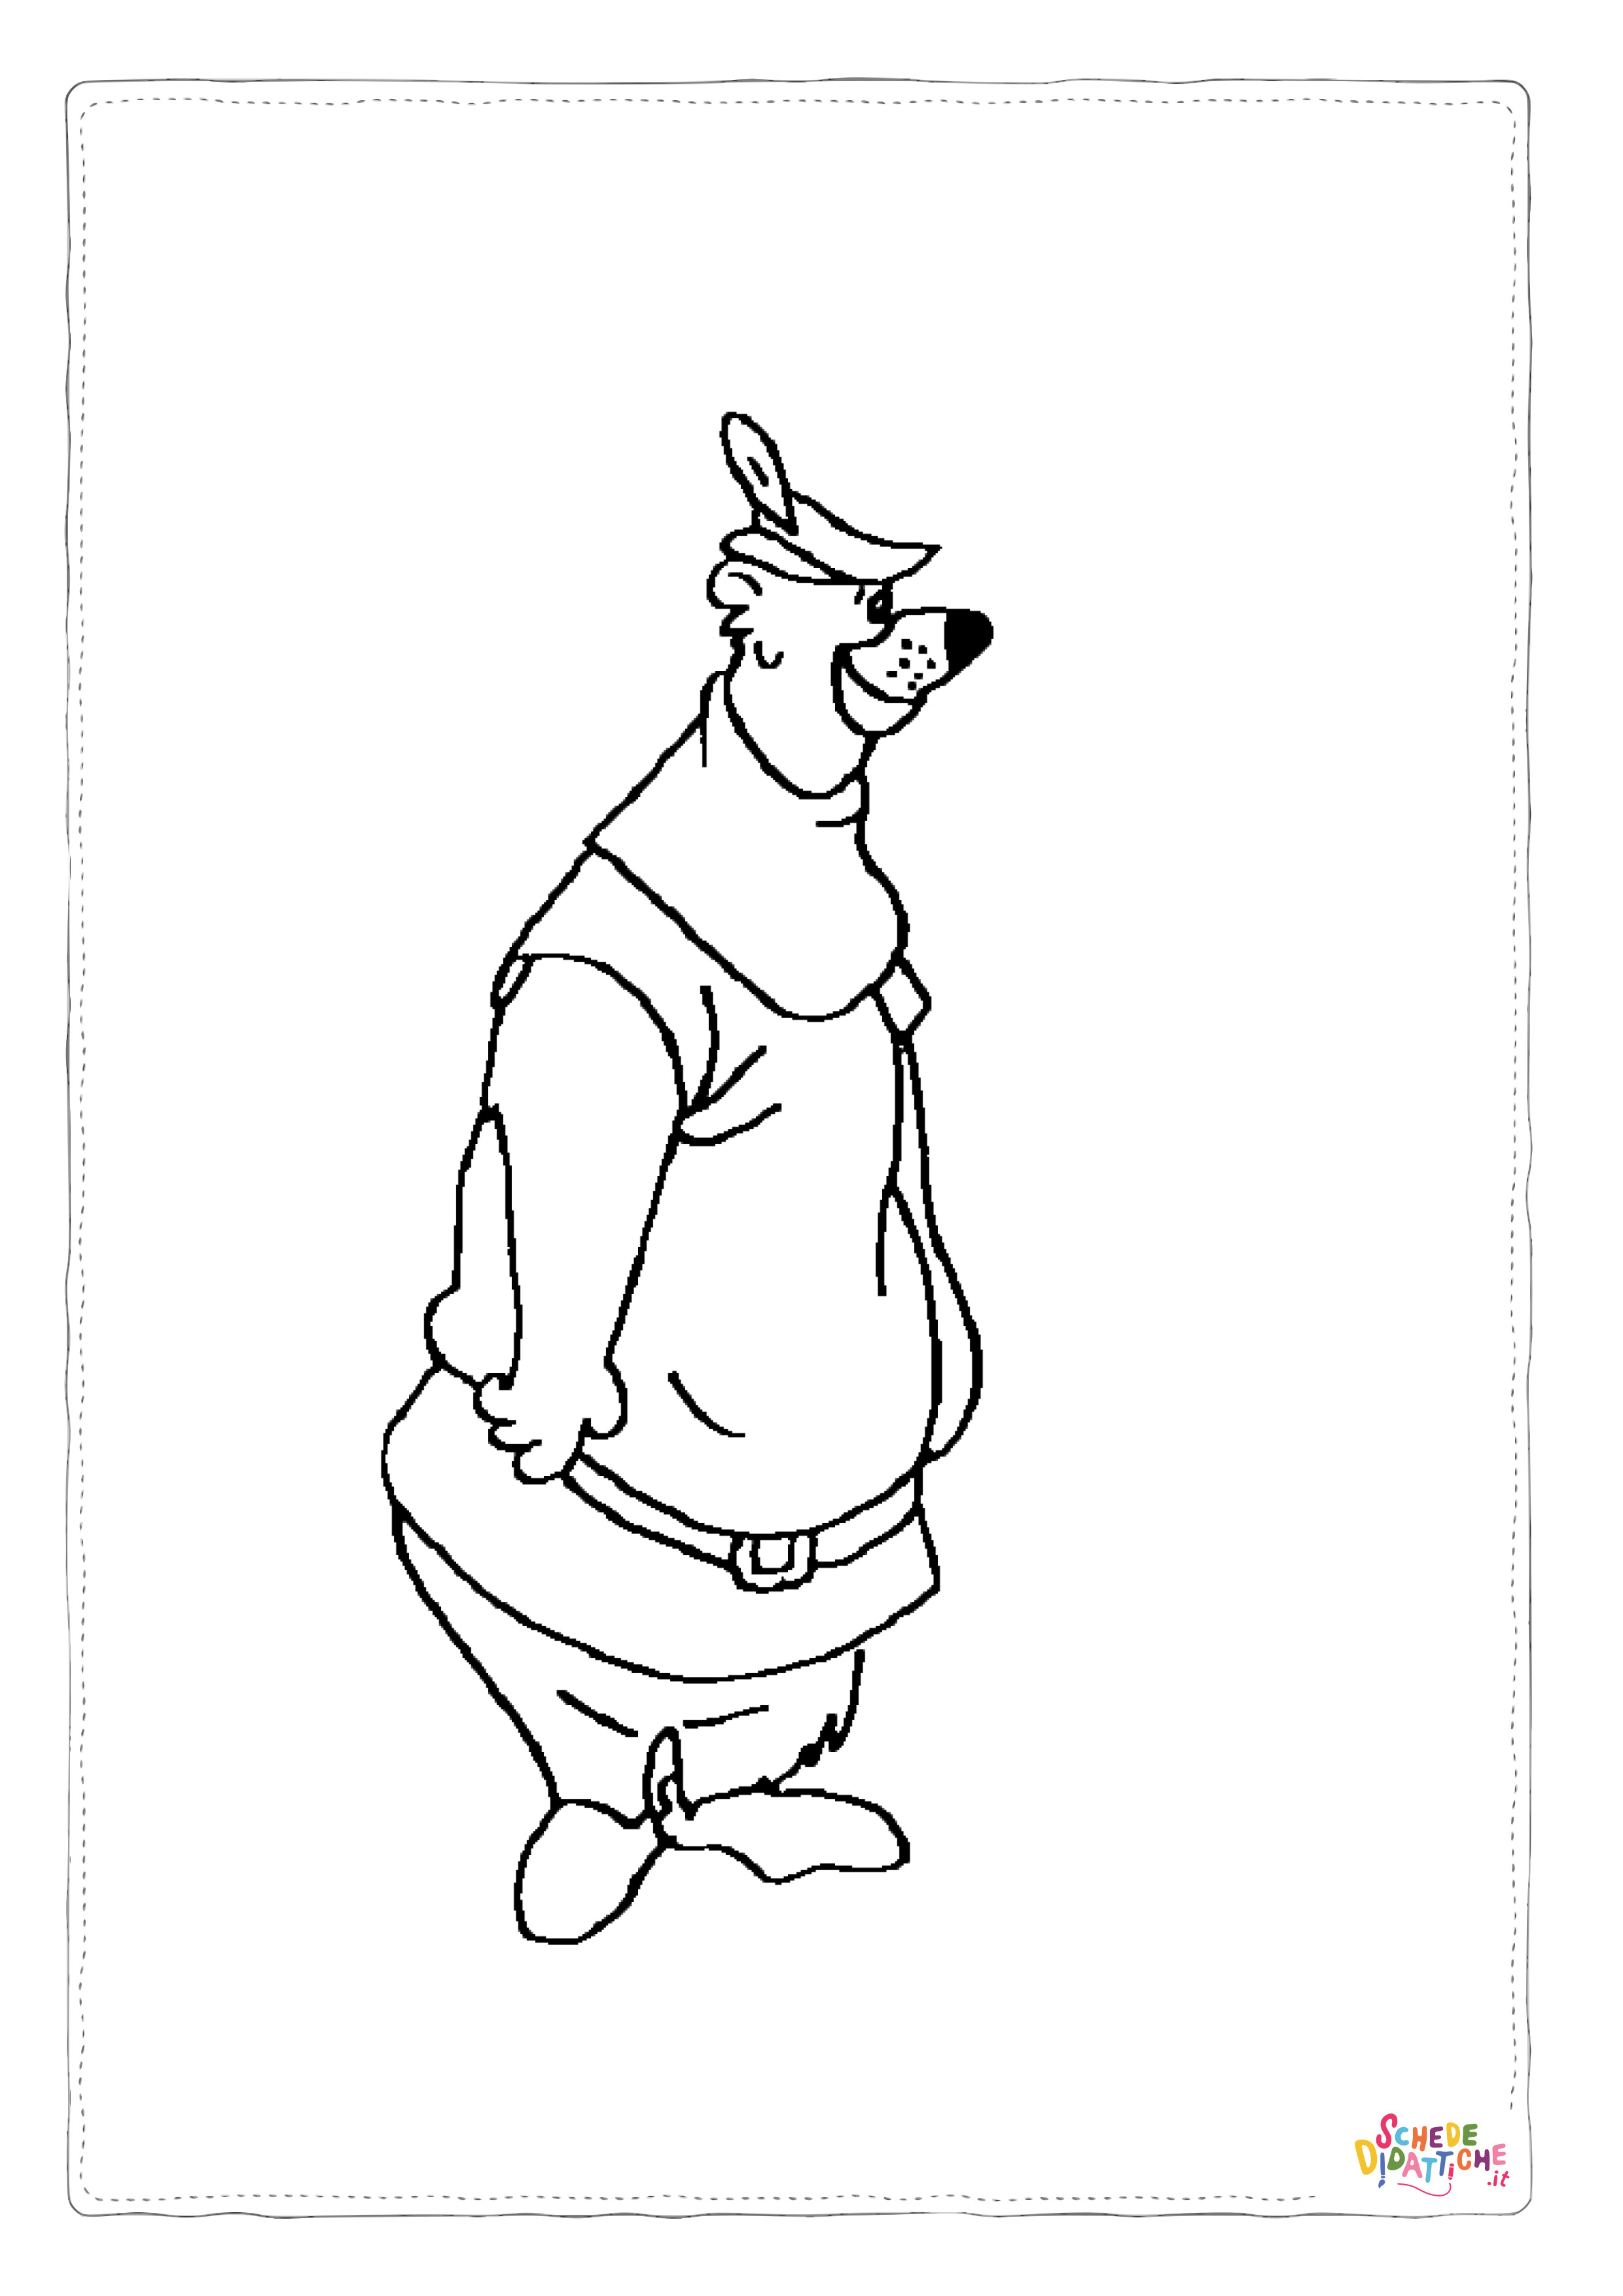 Disegno di Robin Hood da stampare e colorare 3